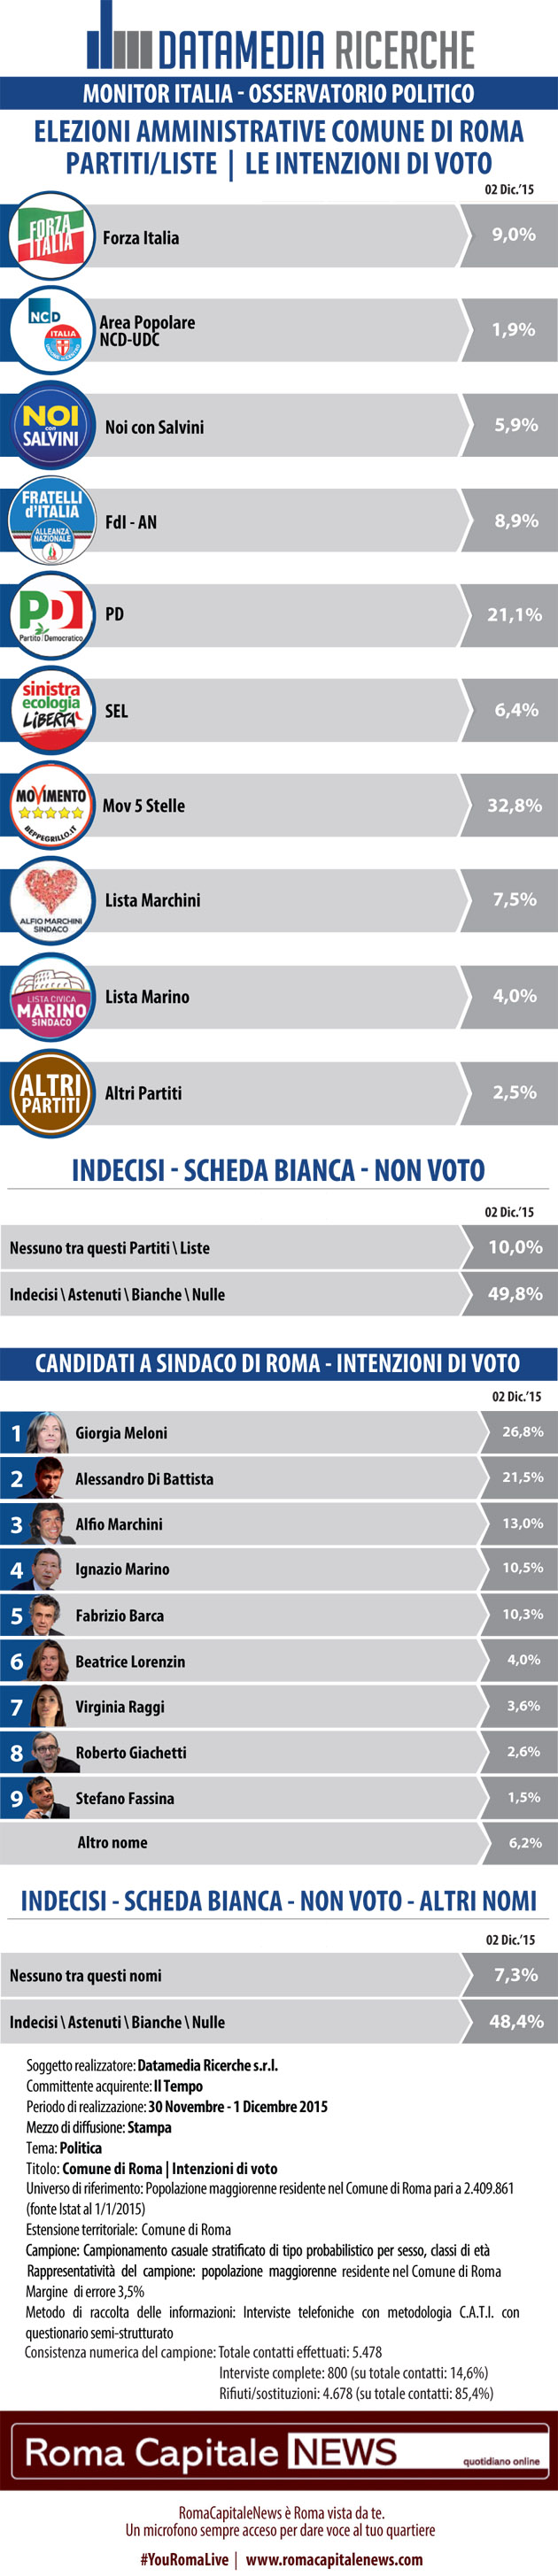 elezioni comunali roma, elenco di partiti e candidati e percentuali